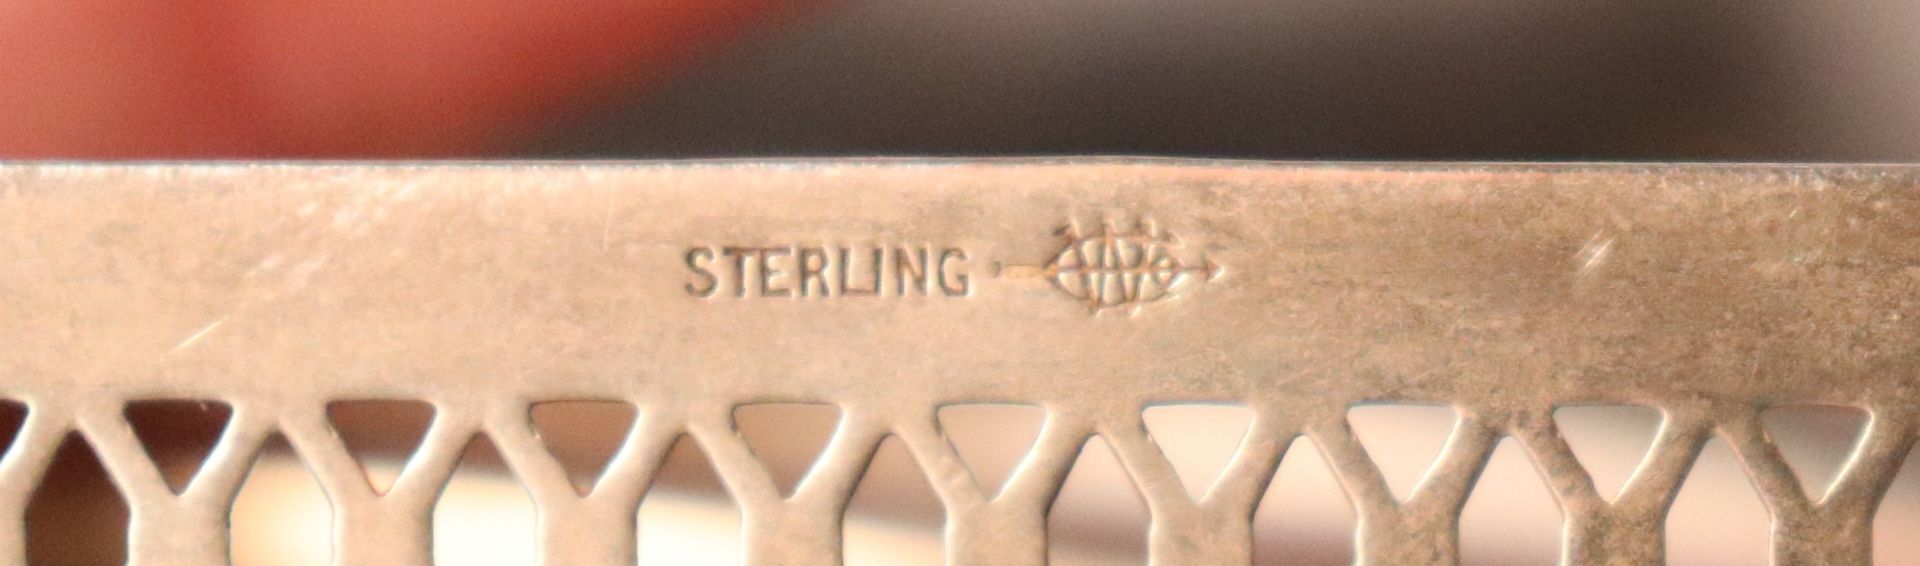 Sterling napkin holder, sterling tray, sterling appetizer forks, 6 pieces, and sterling basket displ - Image 3 of 3